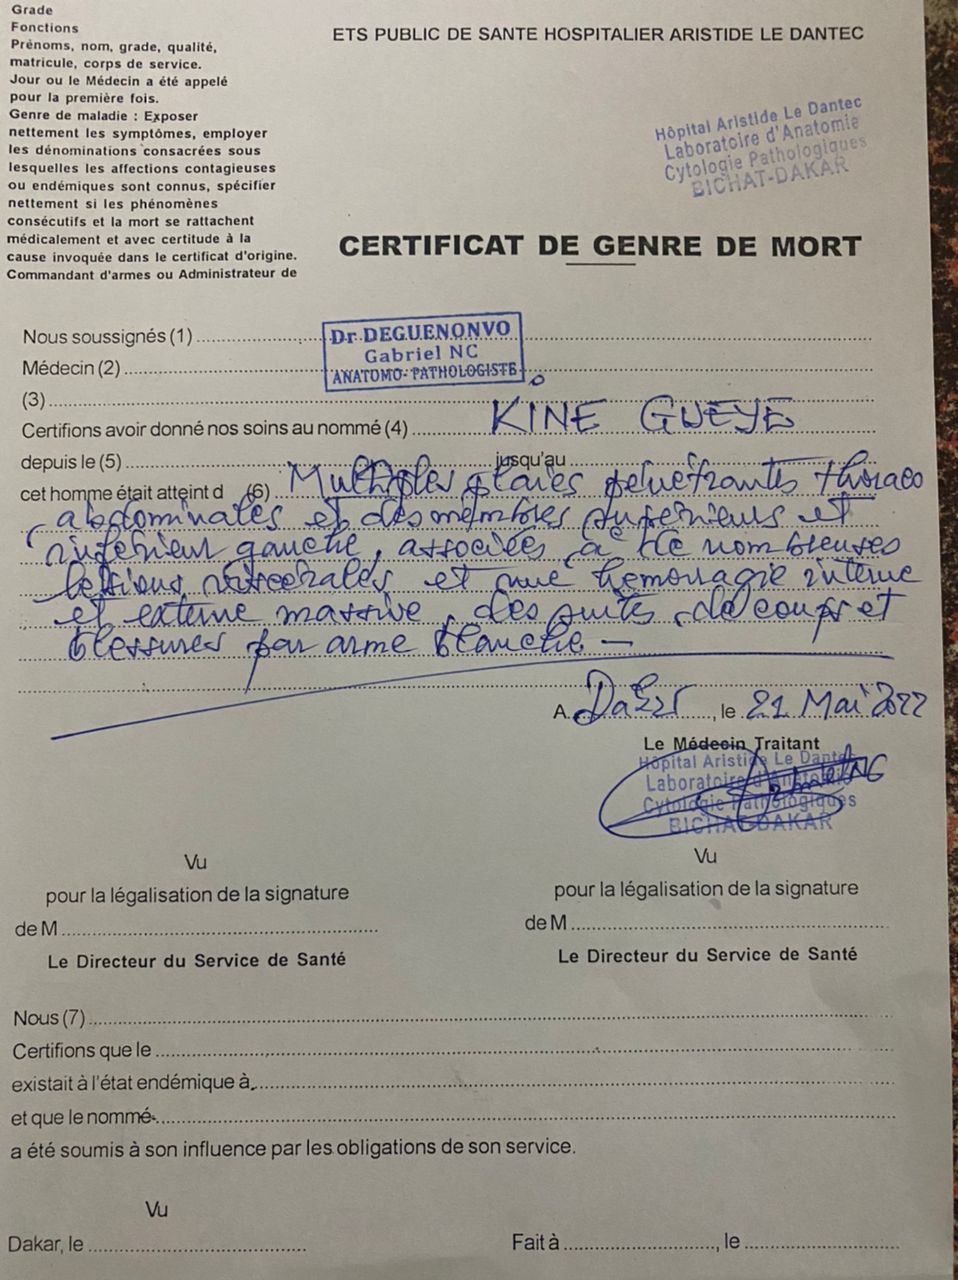 Assassinat de Kiné Gueye: ce que révéle le certificat de genre de mort